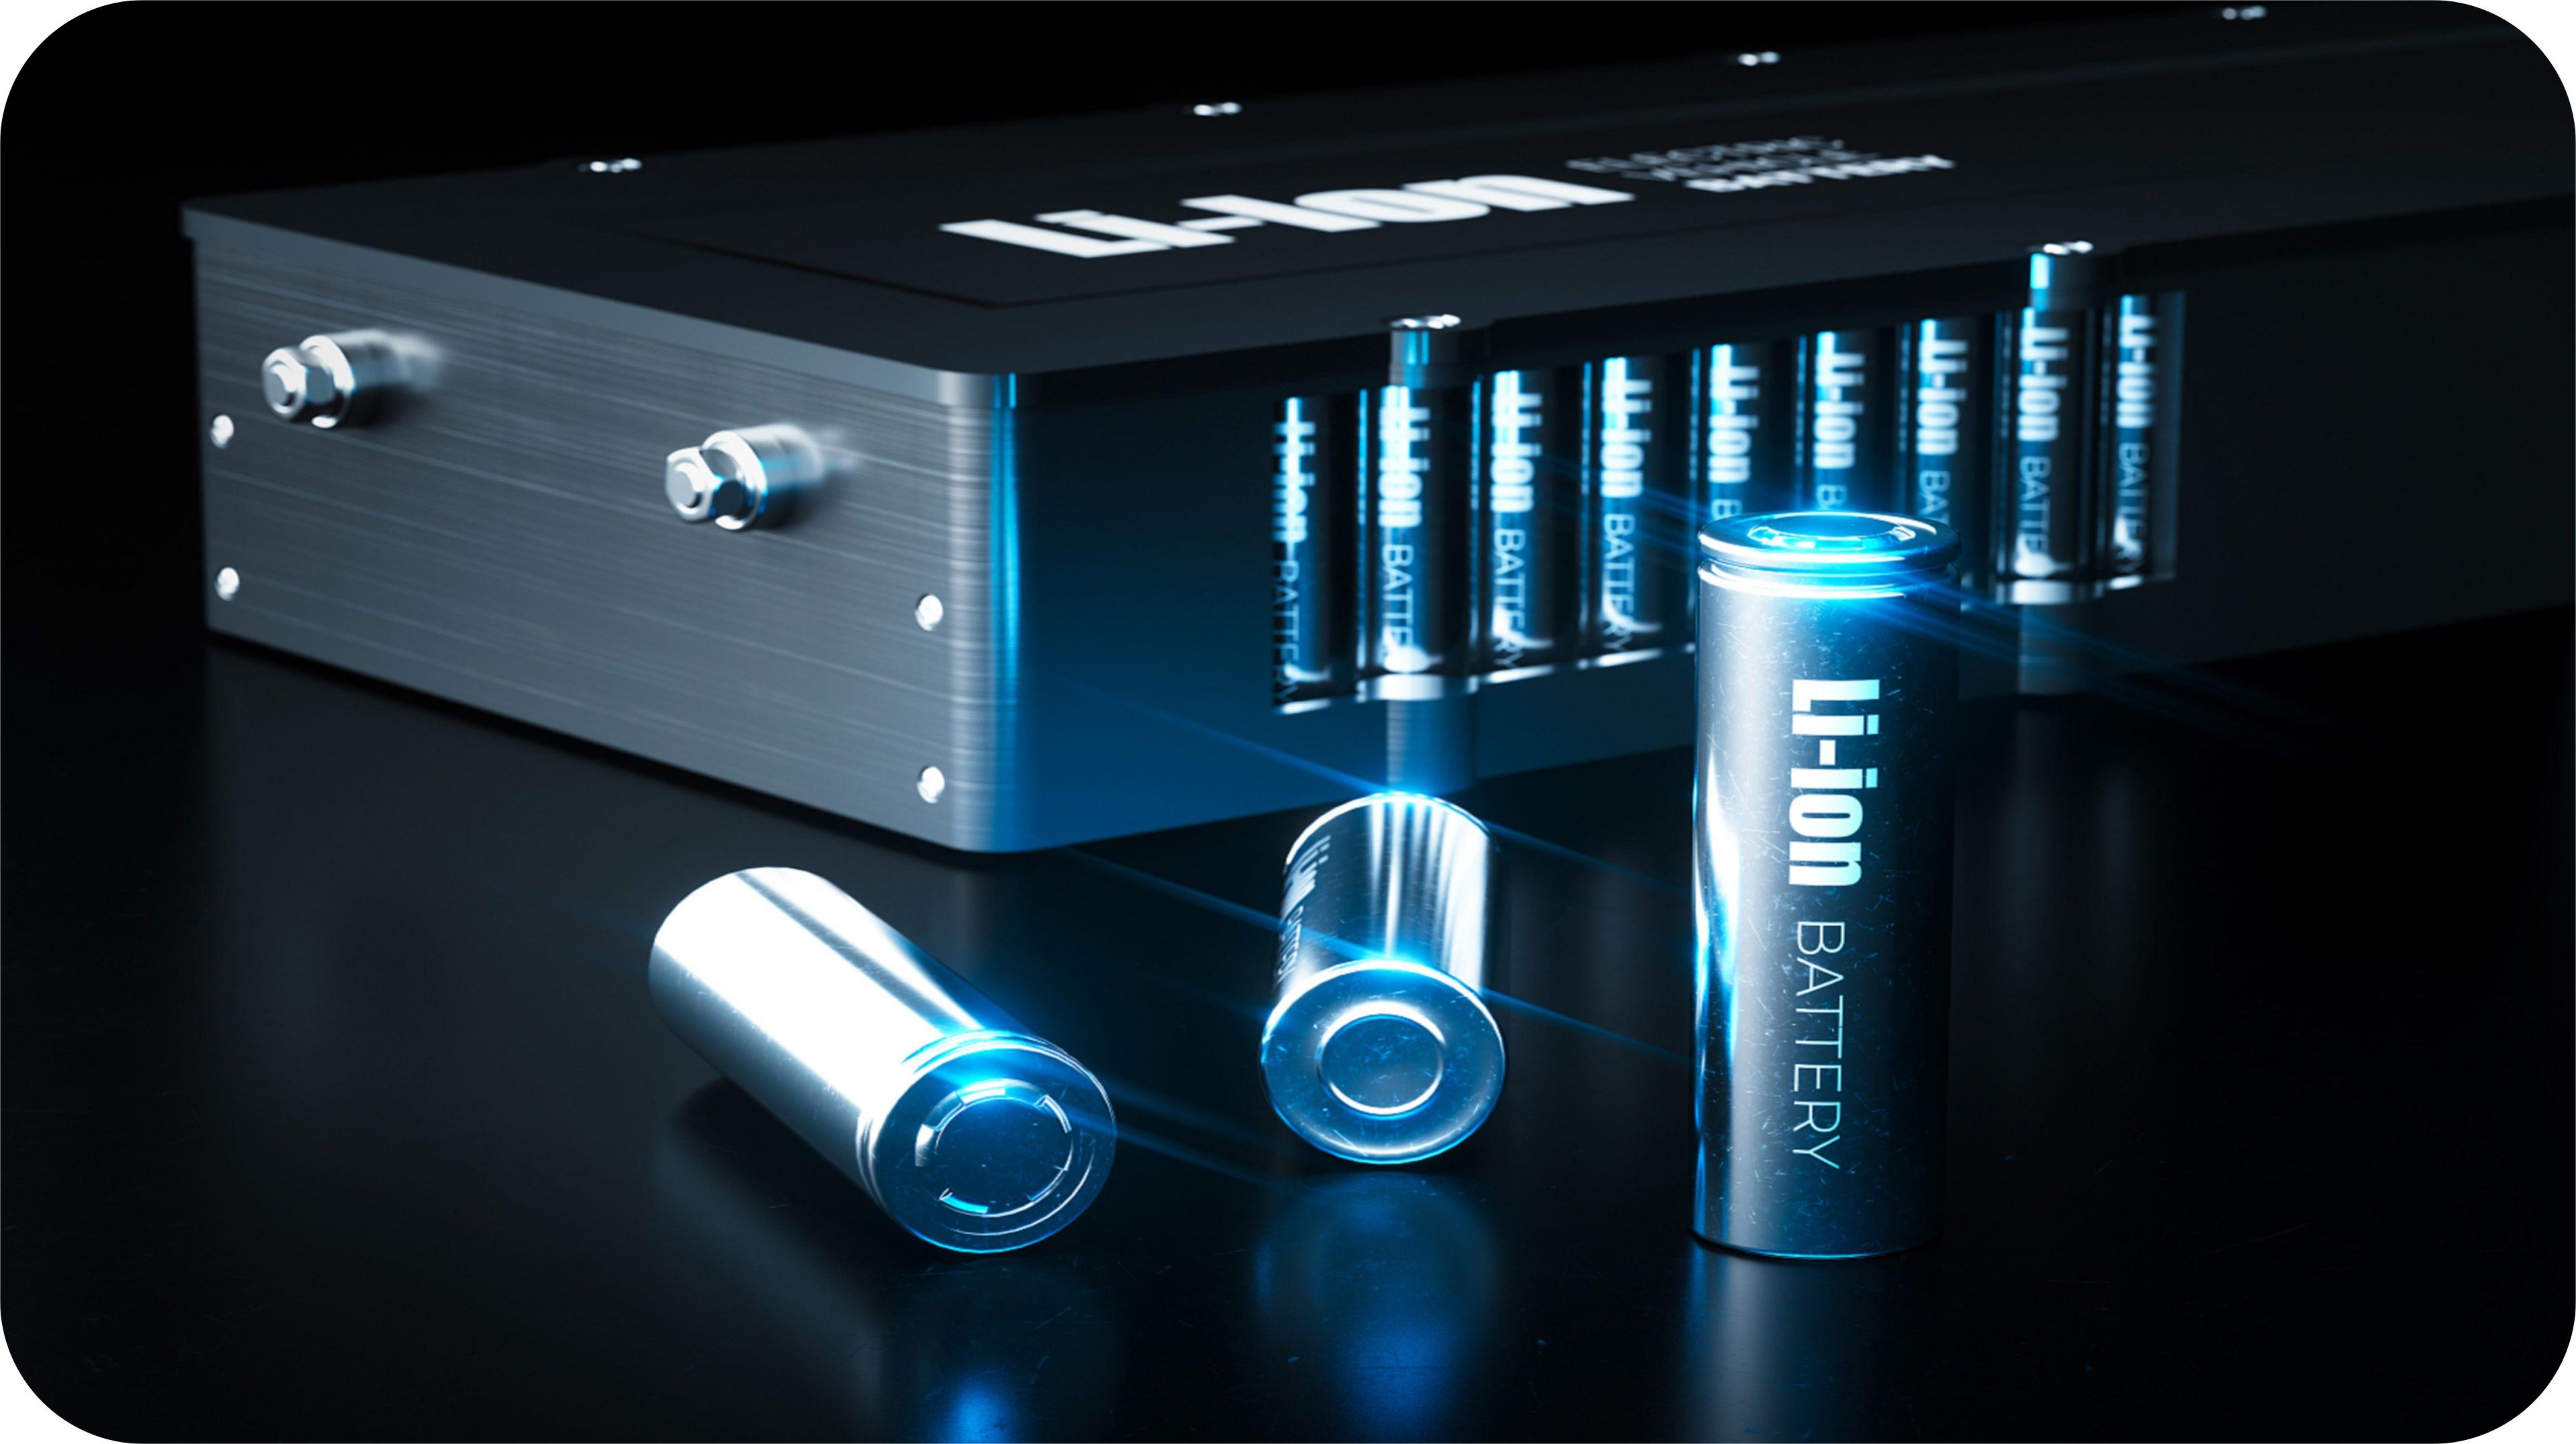 Las baterías LiFePO4 ofrecen una alta densidad de energía, lo que les permite almacenar una cantidad significativa de energía en un paquete relativamente compacto y liviano. Esto es importante para optimizar el espacio y el peso en las embarcaciones marinas.